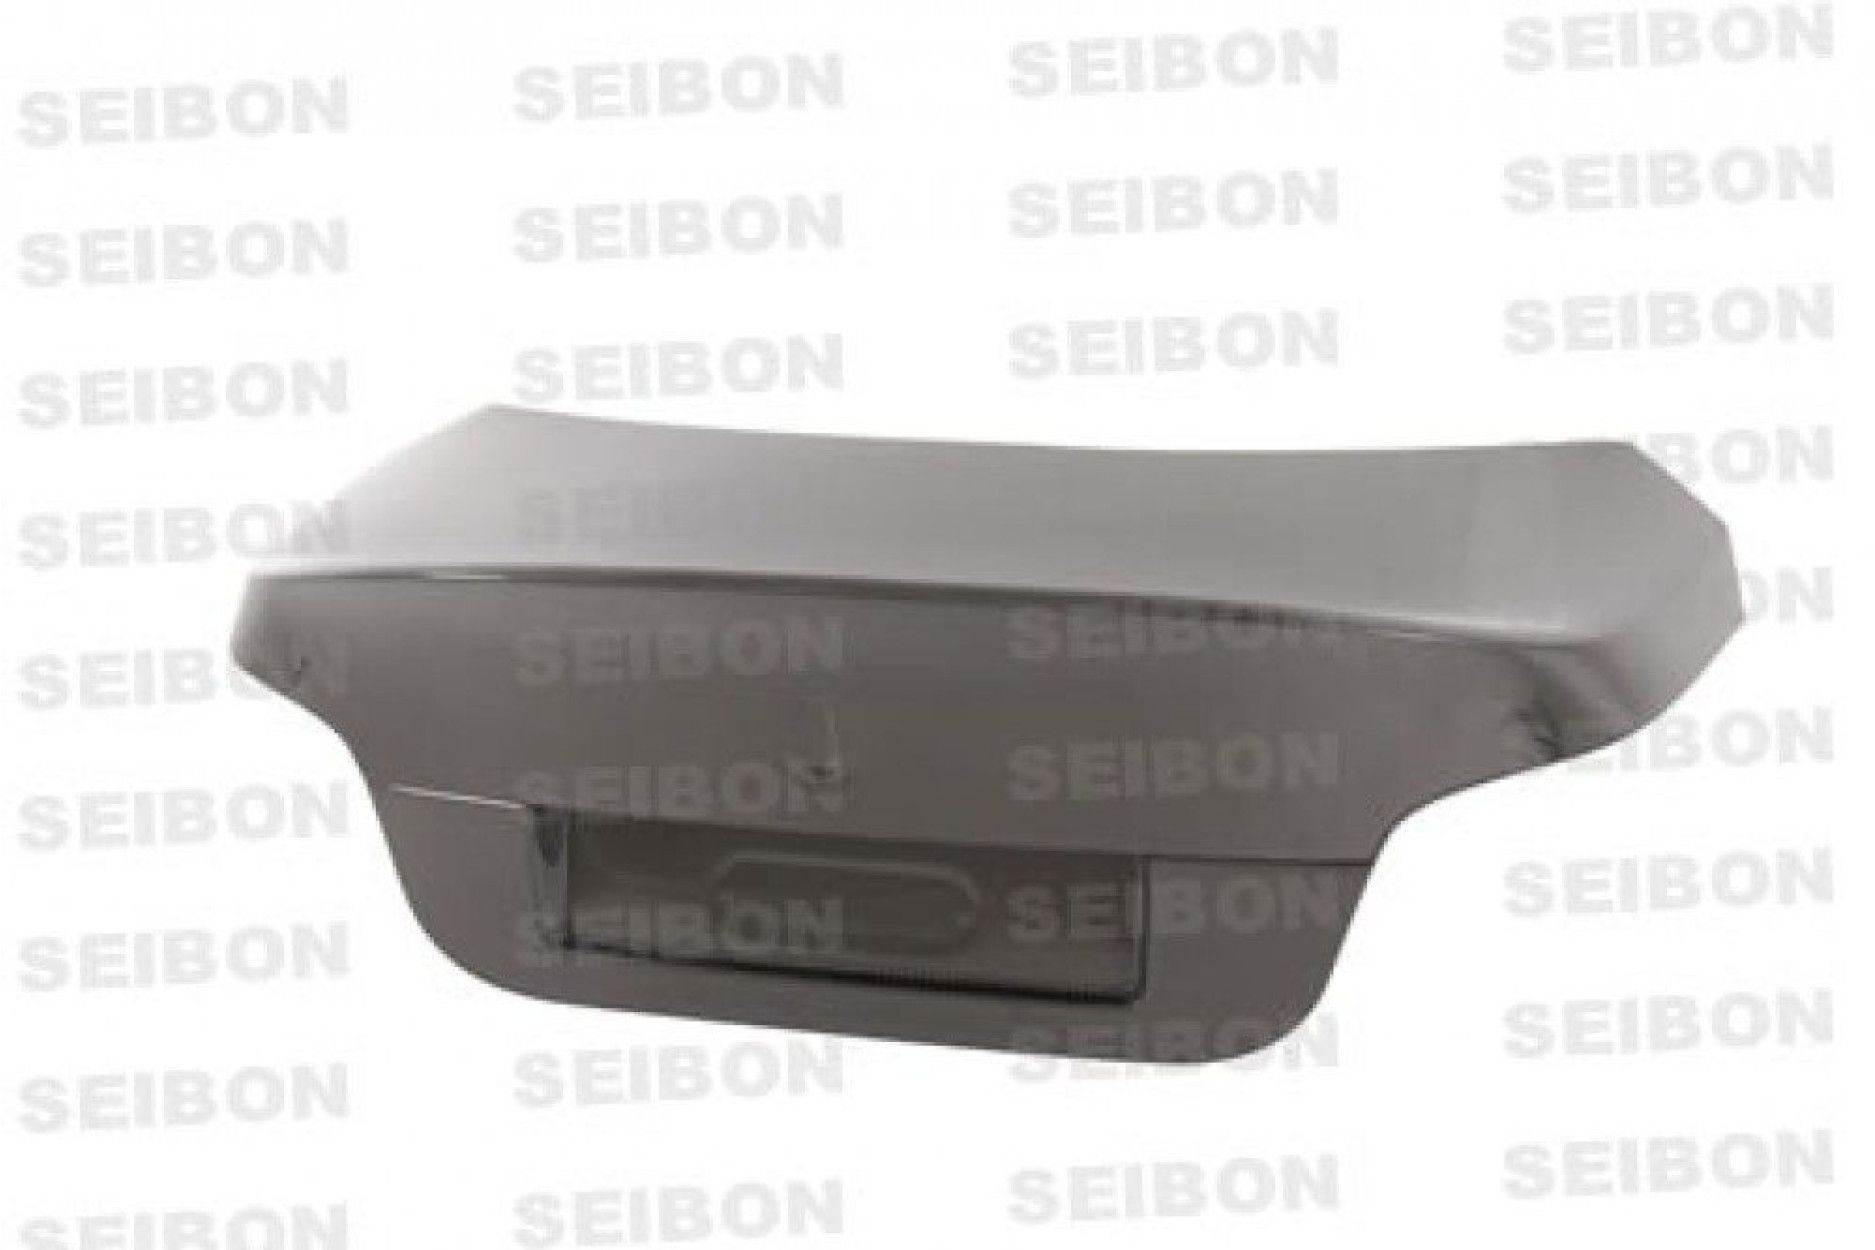 Seibon Carbon Heckdeckel für BMW 5er E60 Limousine 2004 - 2010 , sportliche Leichtbauweise